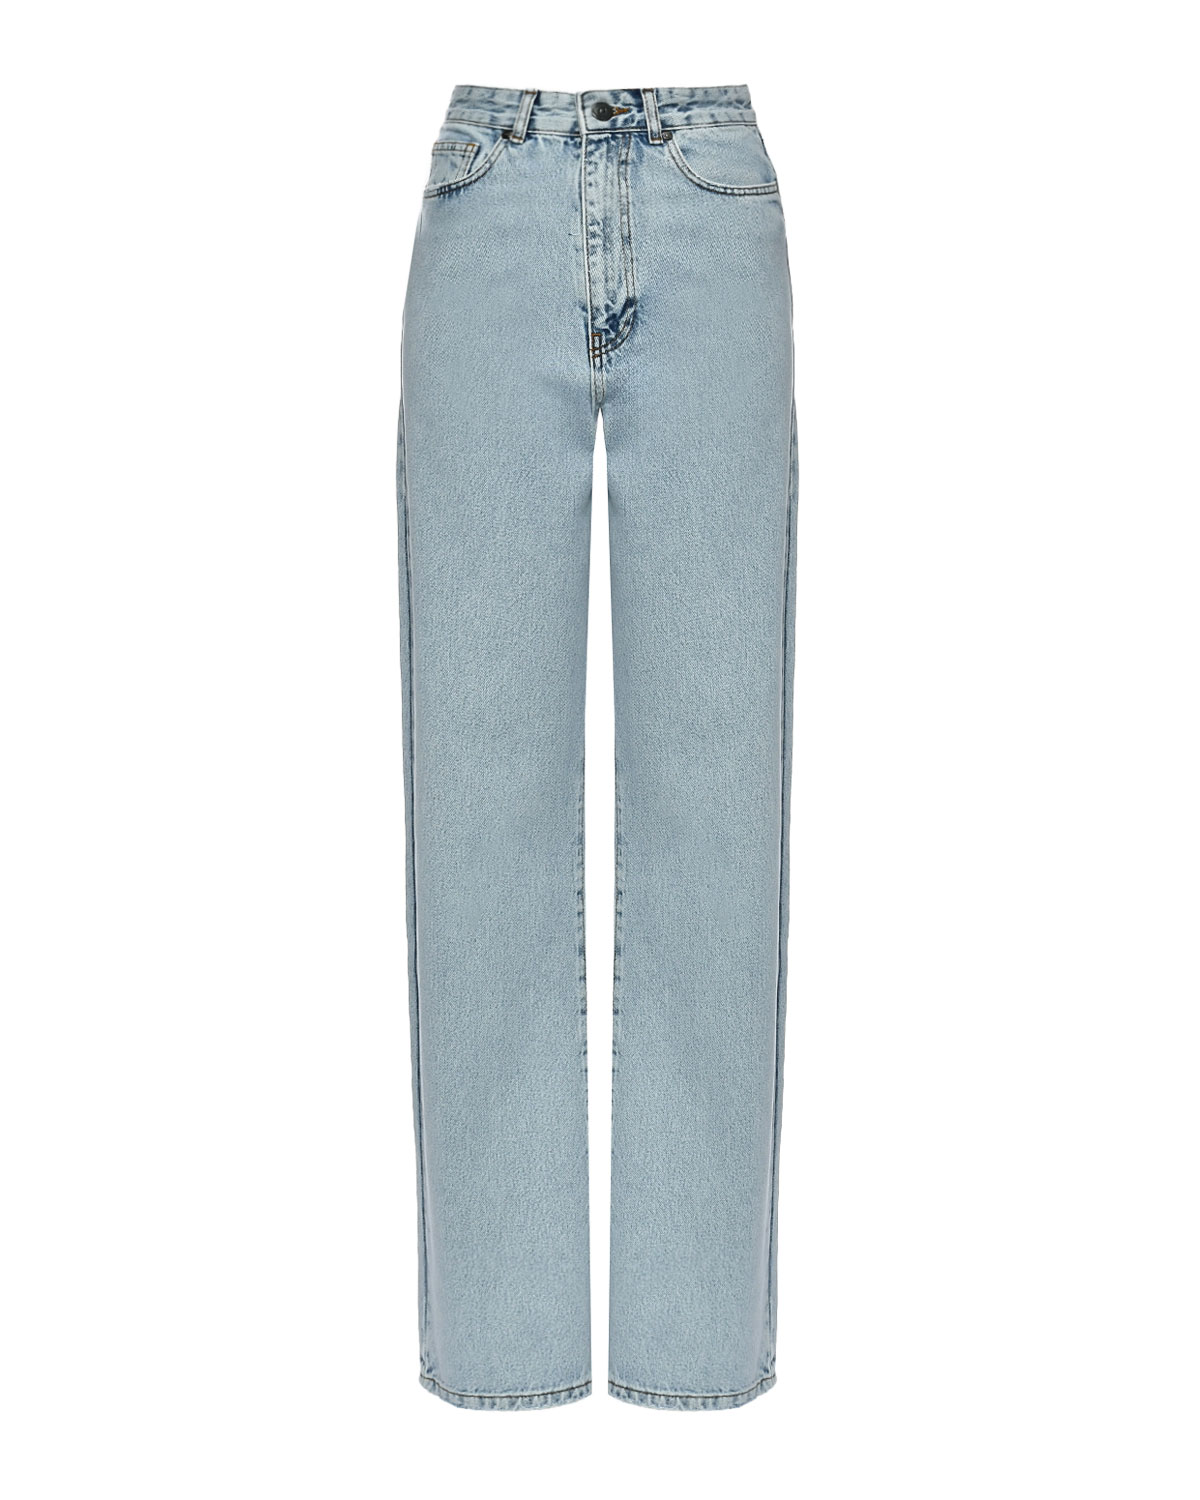 Базовые голубые джинсы ALINE, размер 42, цвет нет цвета